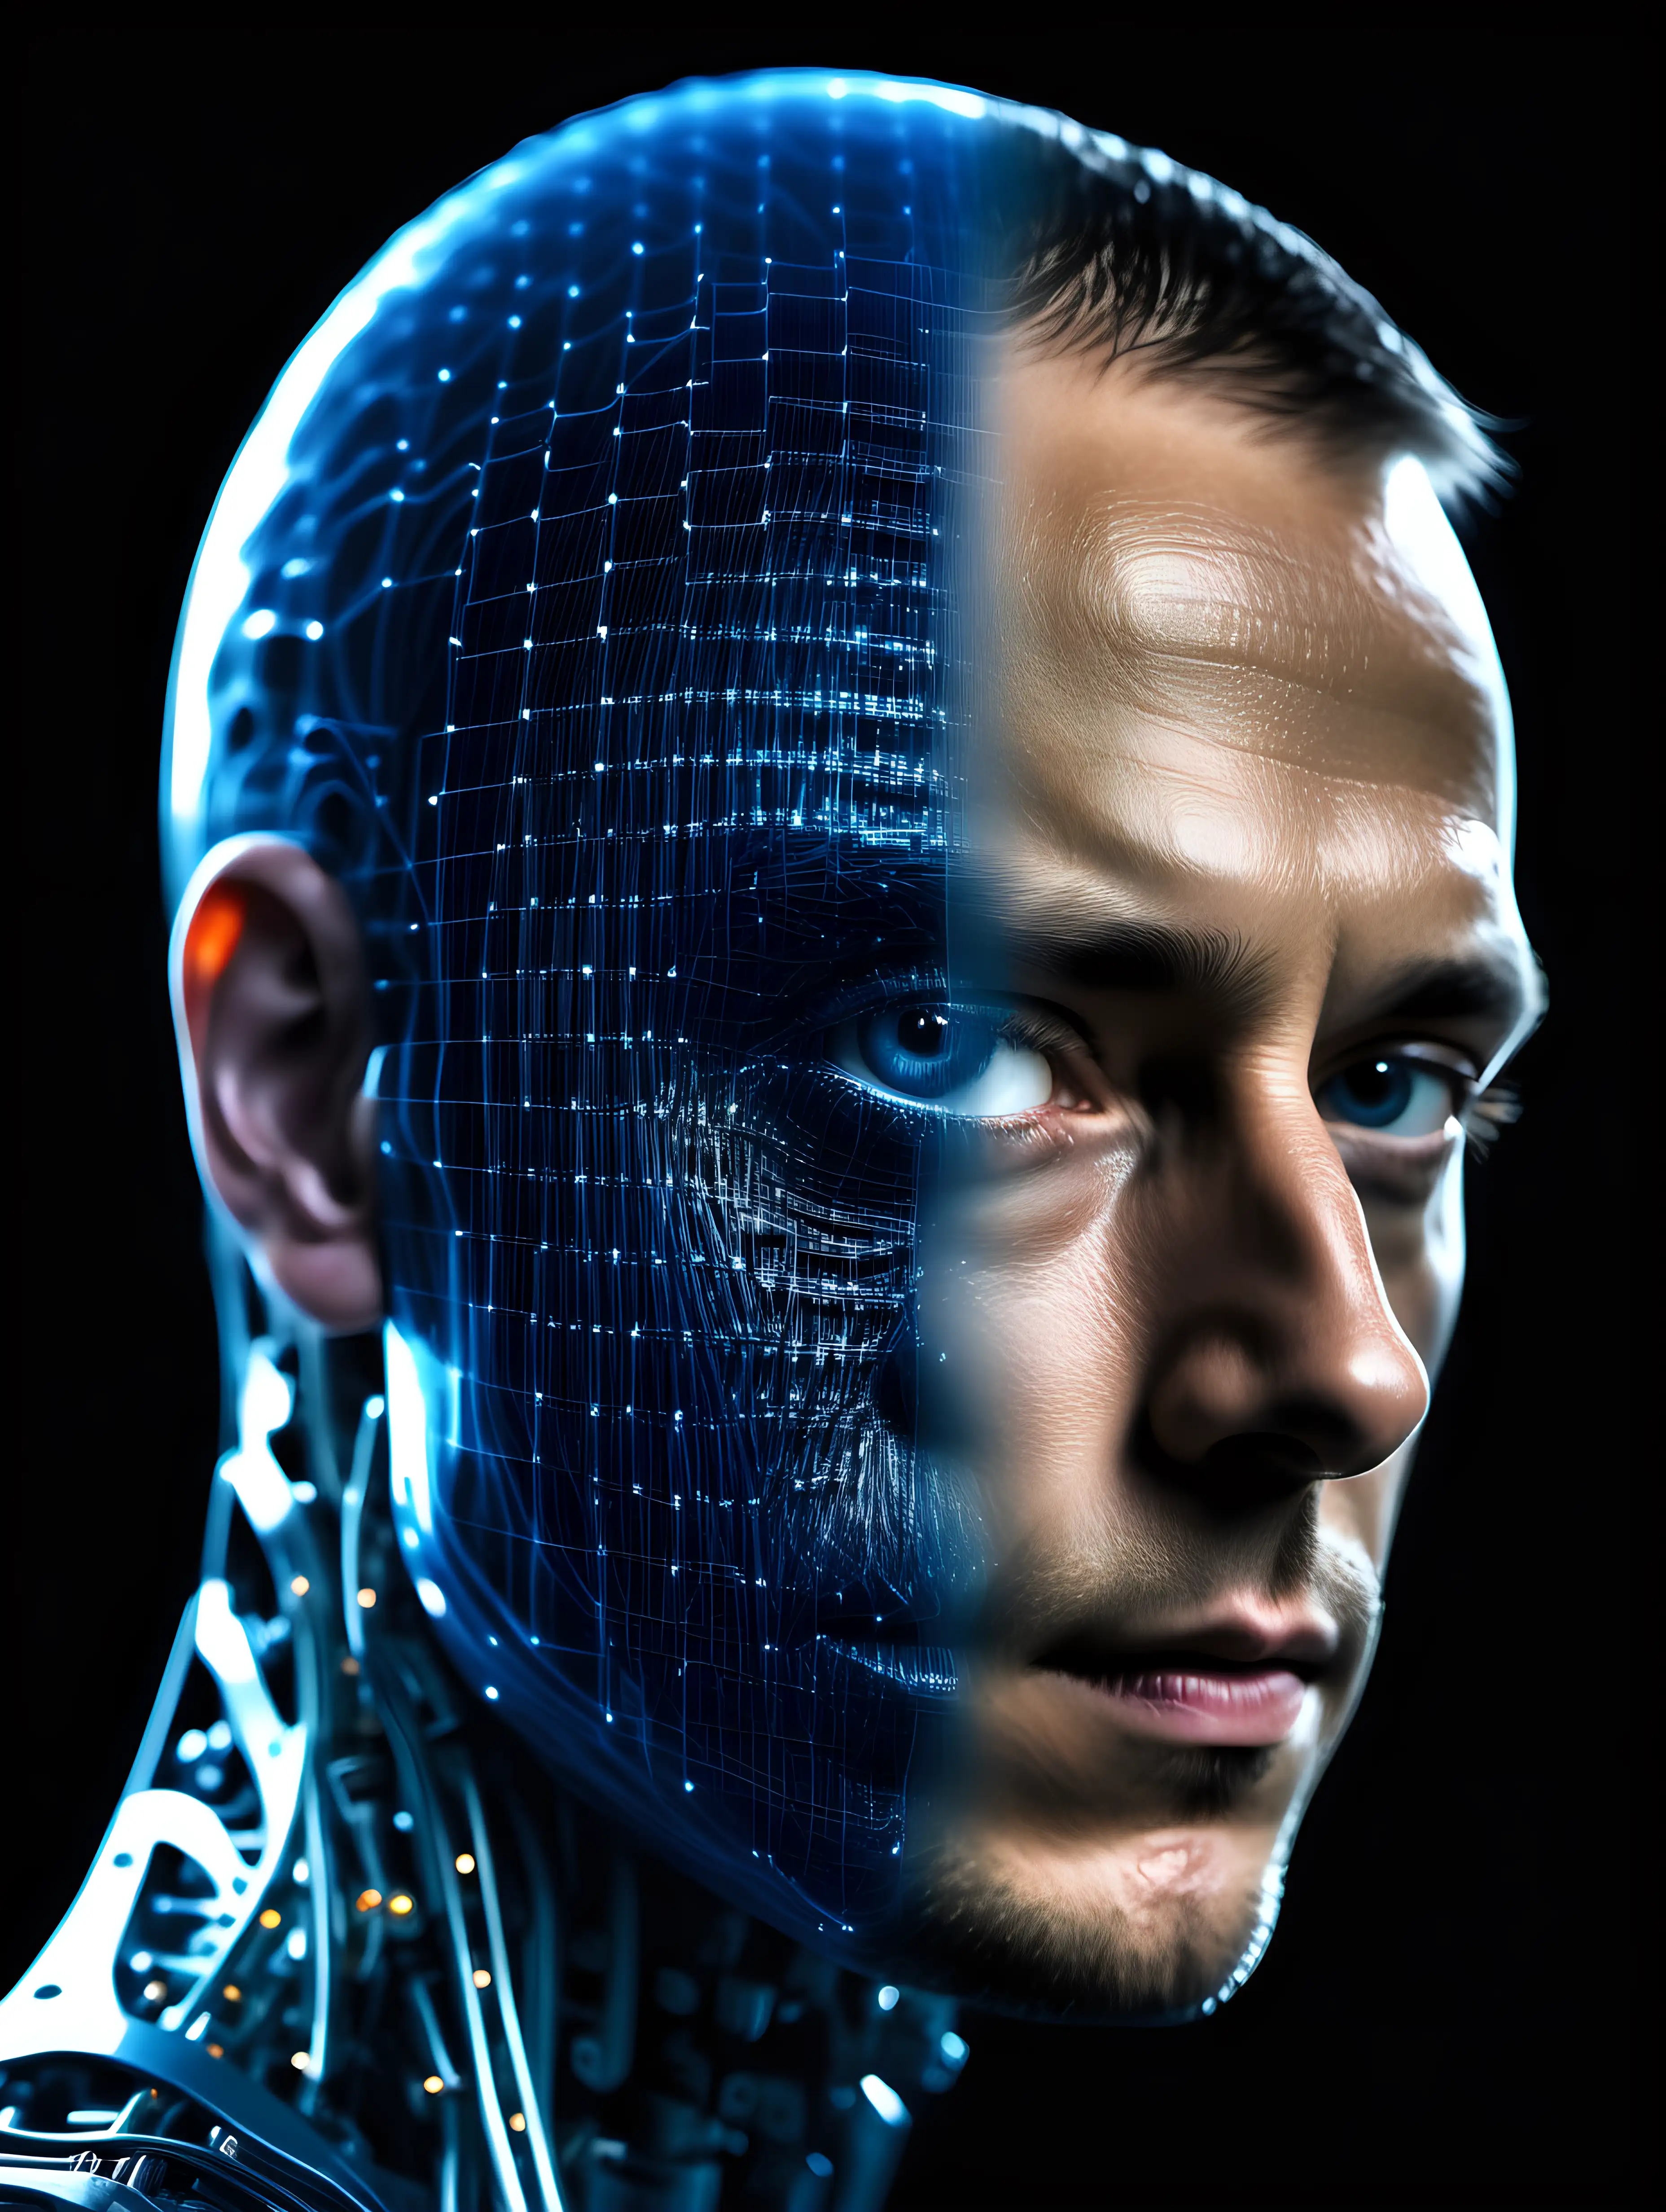 Futuristic Cybernetic Fusion Man and Machine in Matrix Style